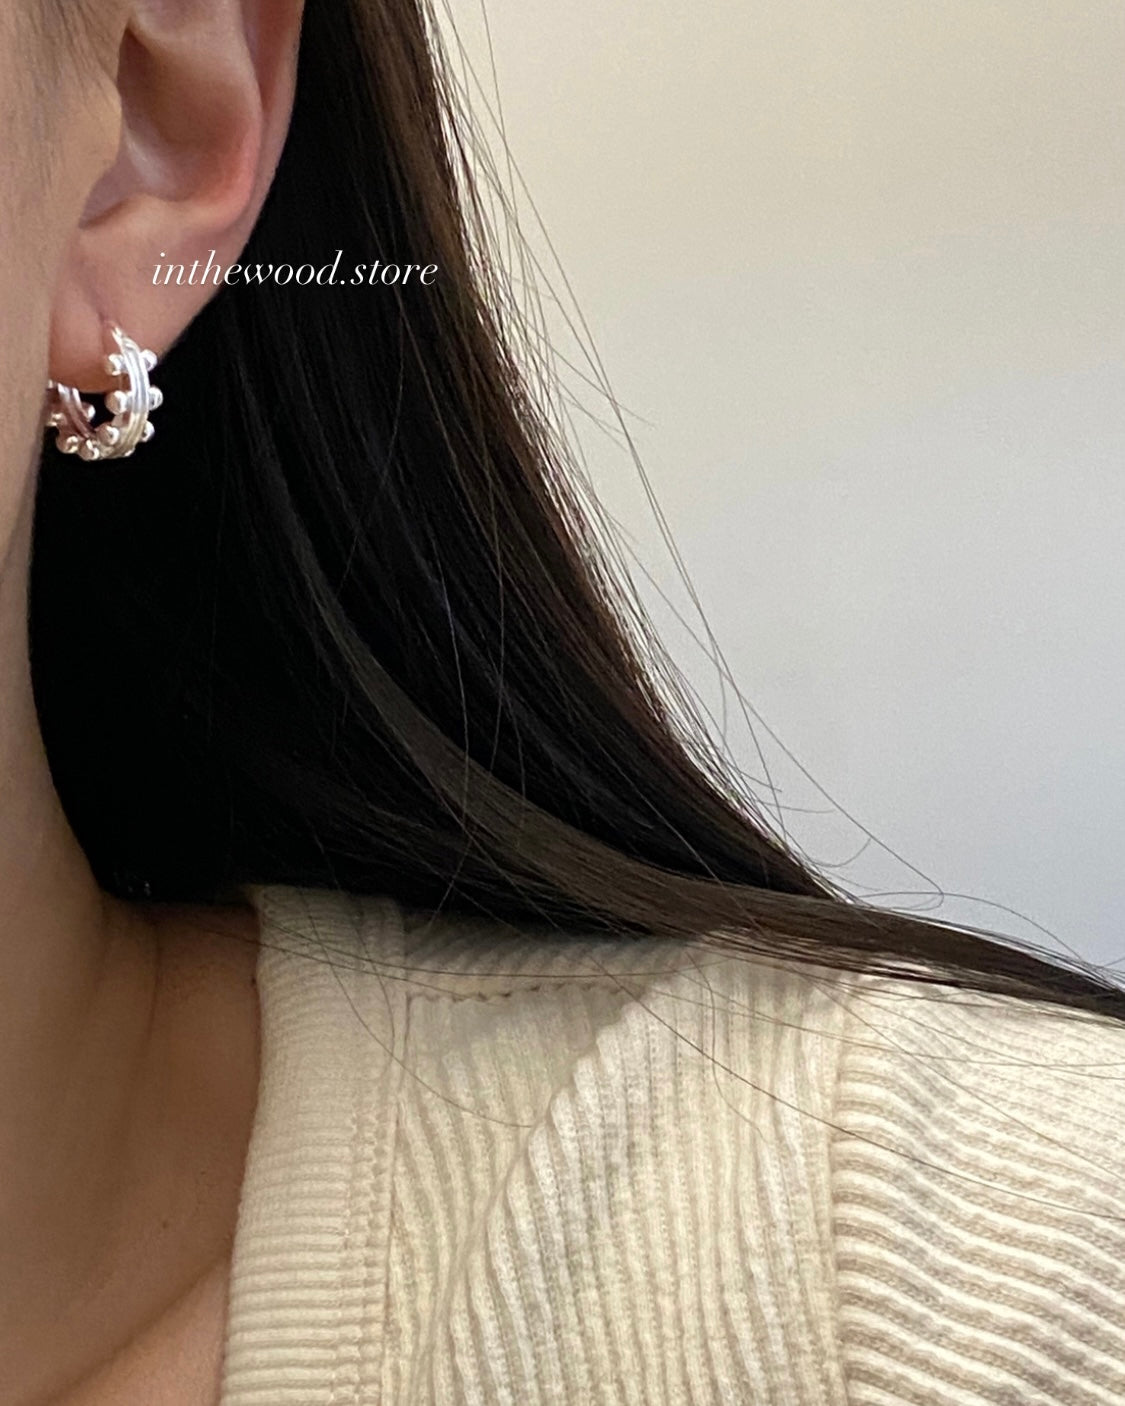 [925silver] Lace Bell Earrings